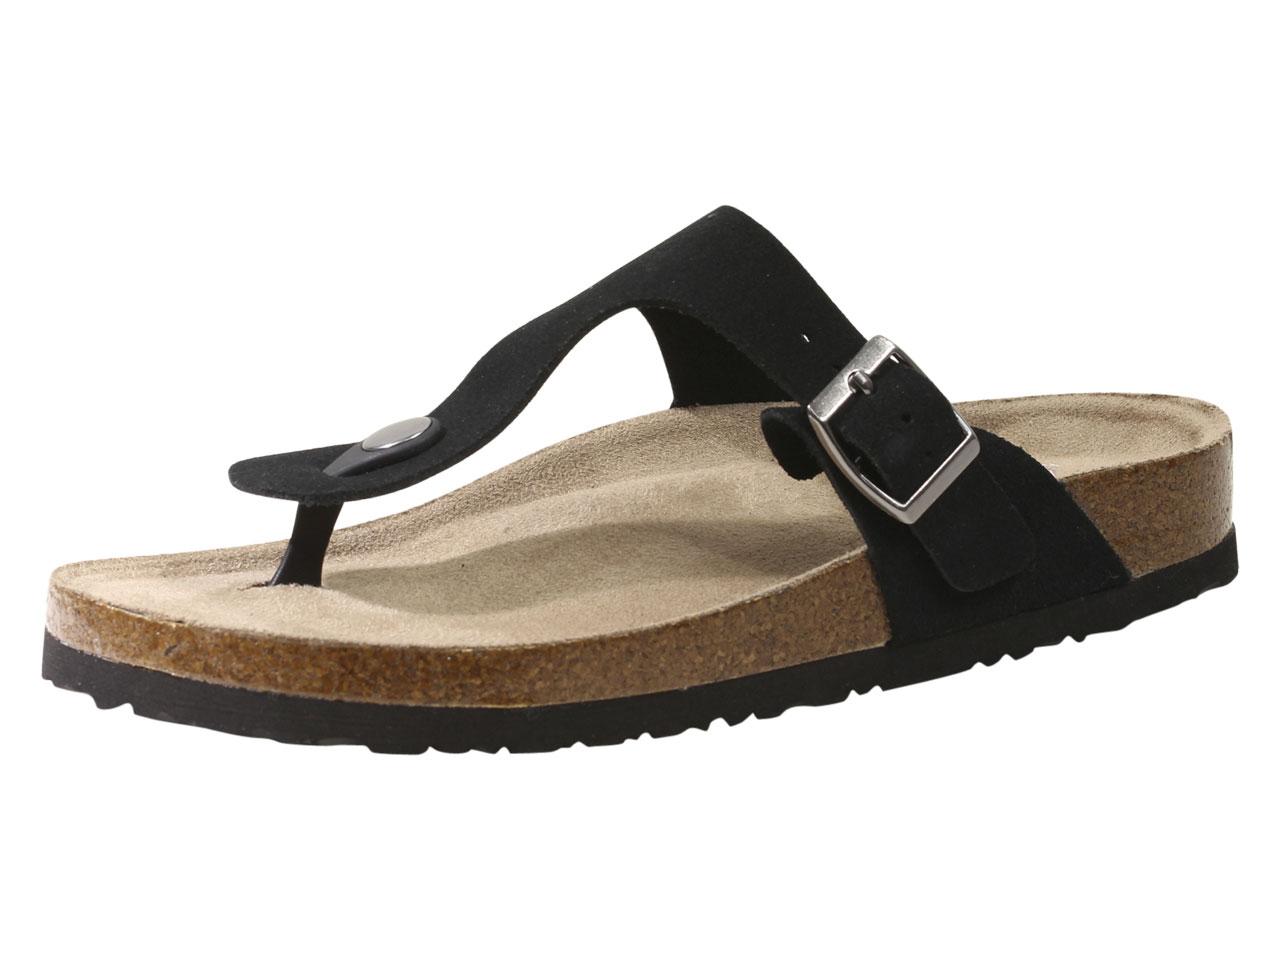 skechers luxe foam sandals black